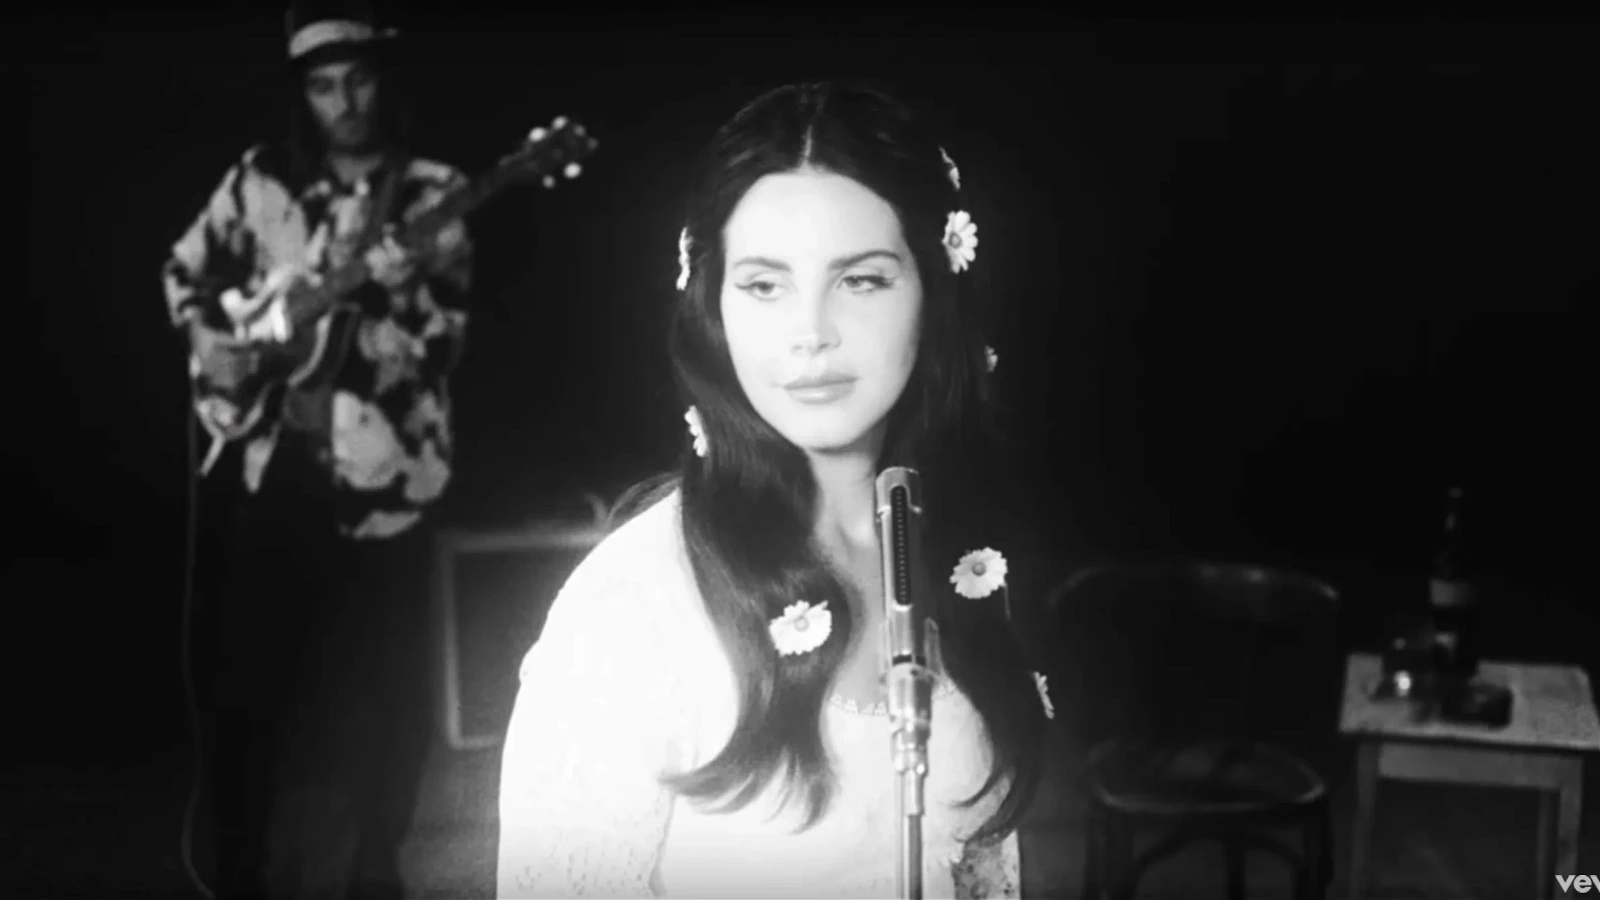 Lana Del Rey in the Love Music Video I Vevo